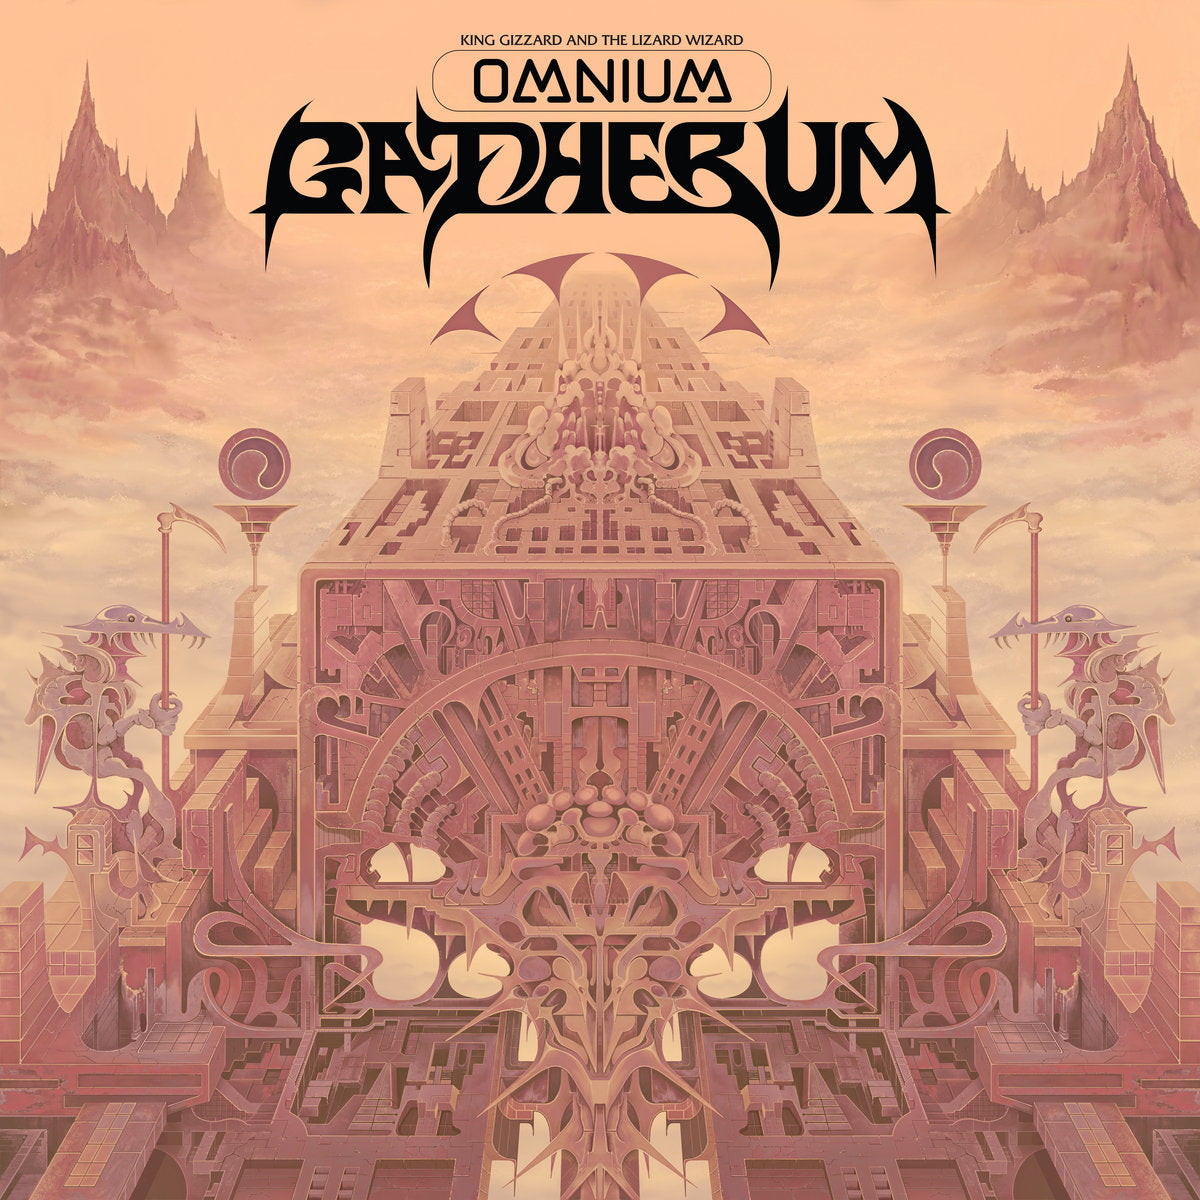 King Gizzard and the Lizard Wizard - Omnium Gatherum (Vinyl 2LP)